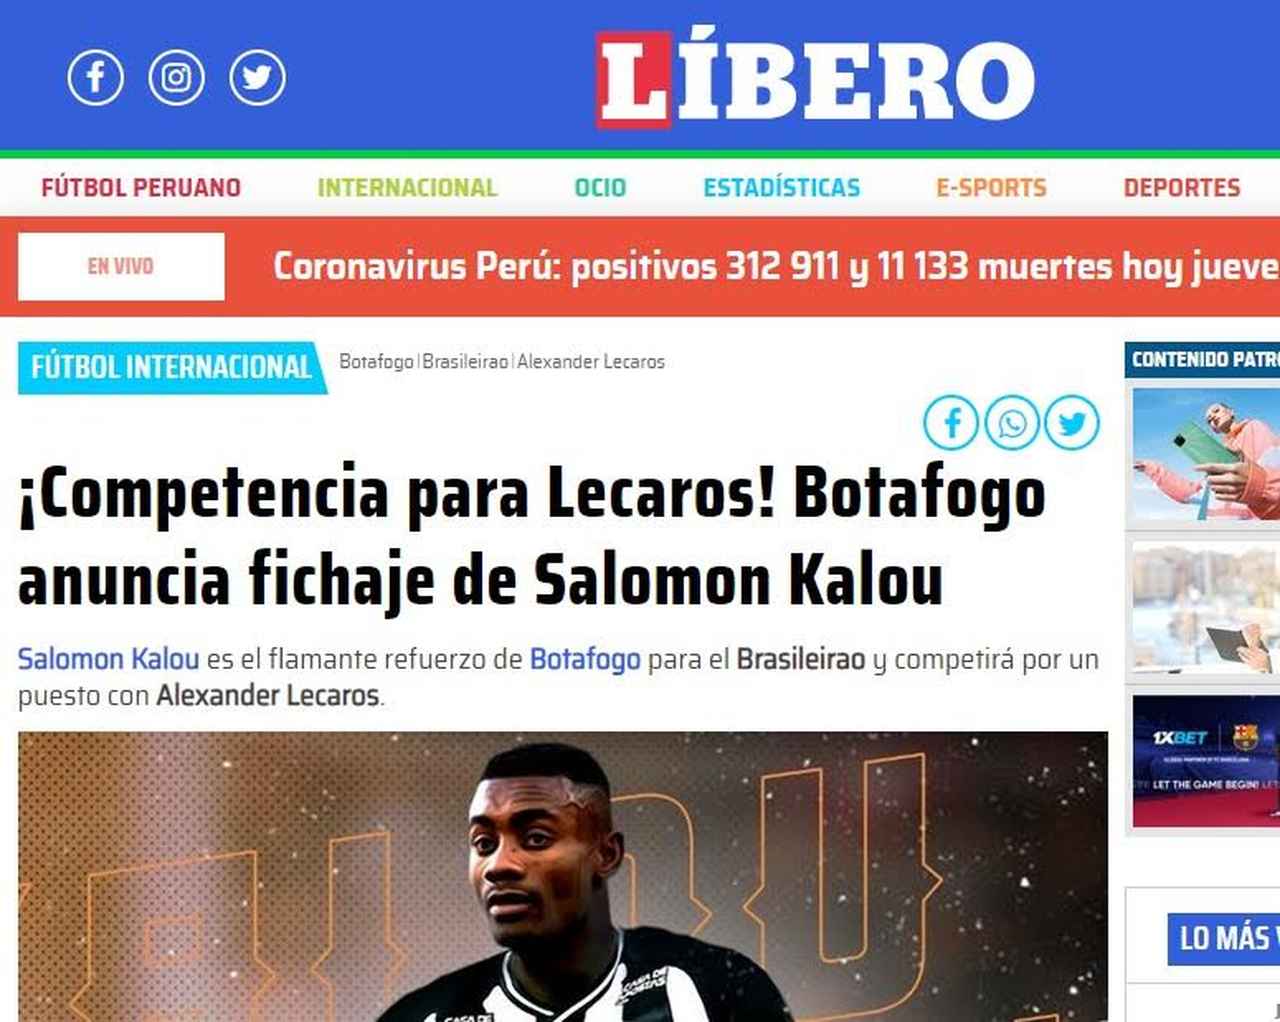 Líbero - Peru - Os peruanos aproveitaram a deixa para incluir o jovem compatriota Lecaros ao noticiarem o acerto entre Kalou e Botafogo. O diário peruano afirmou que eles disputarão espaço.